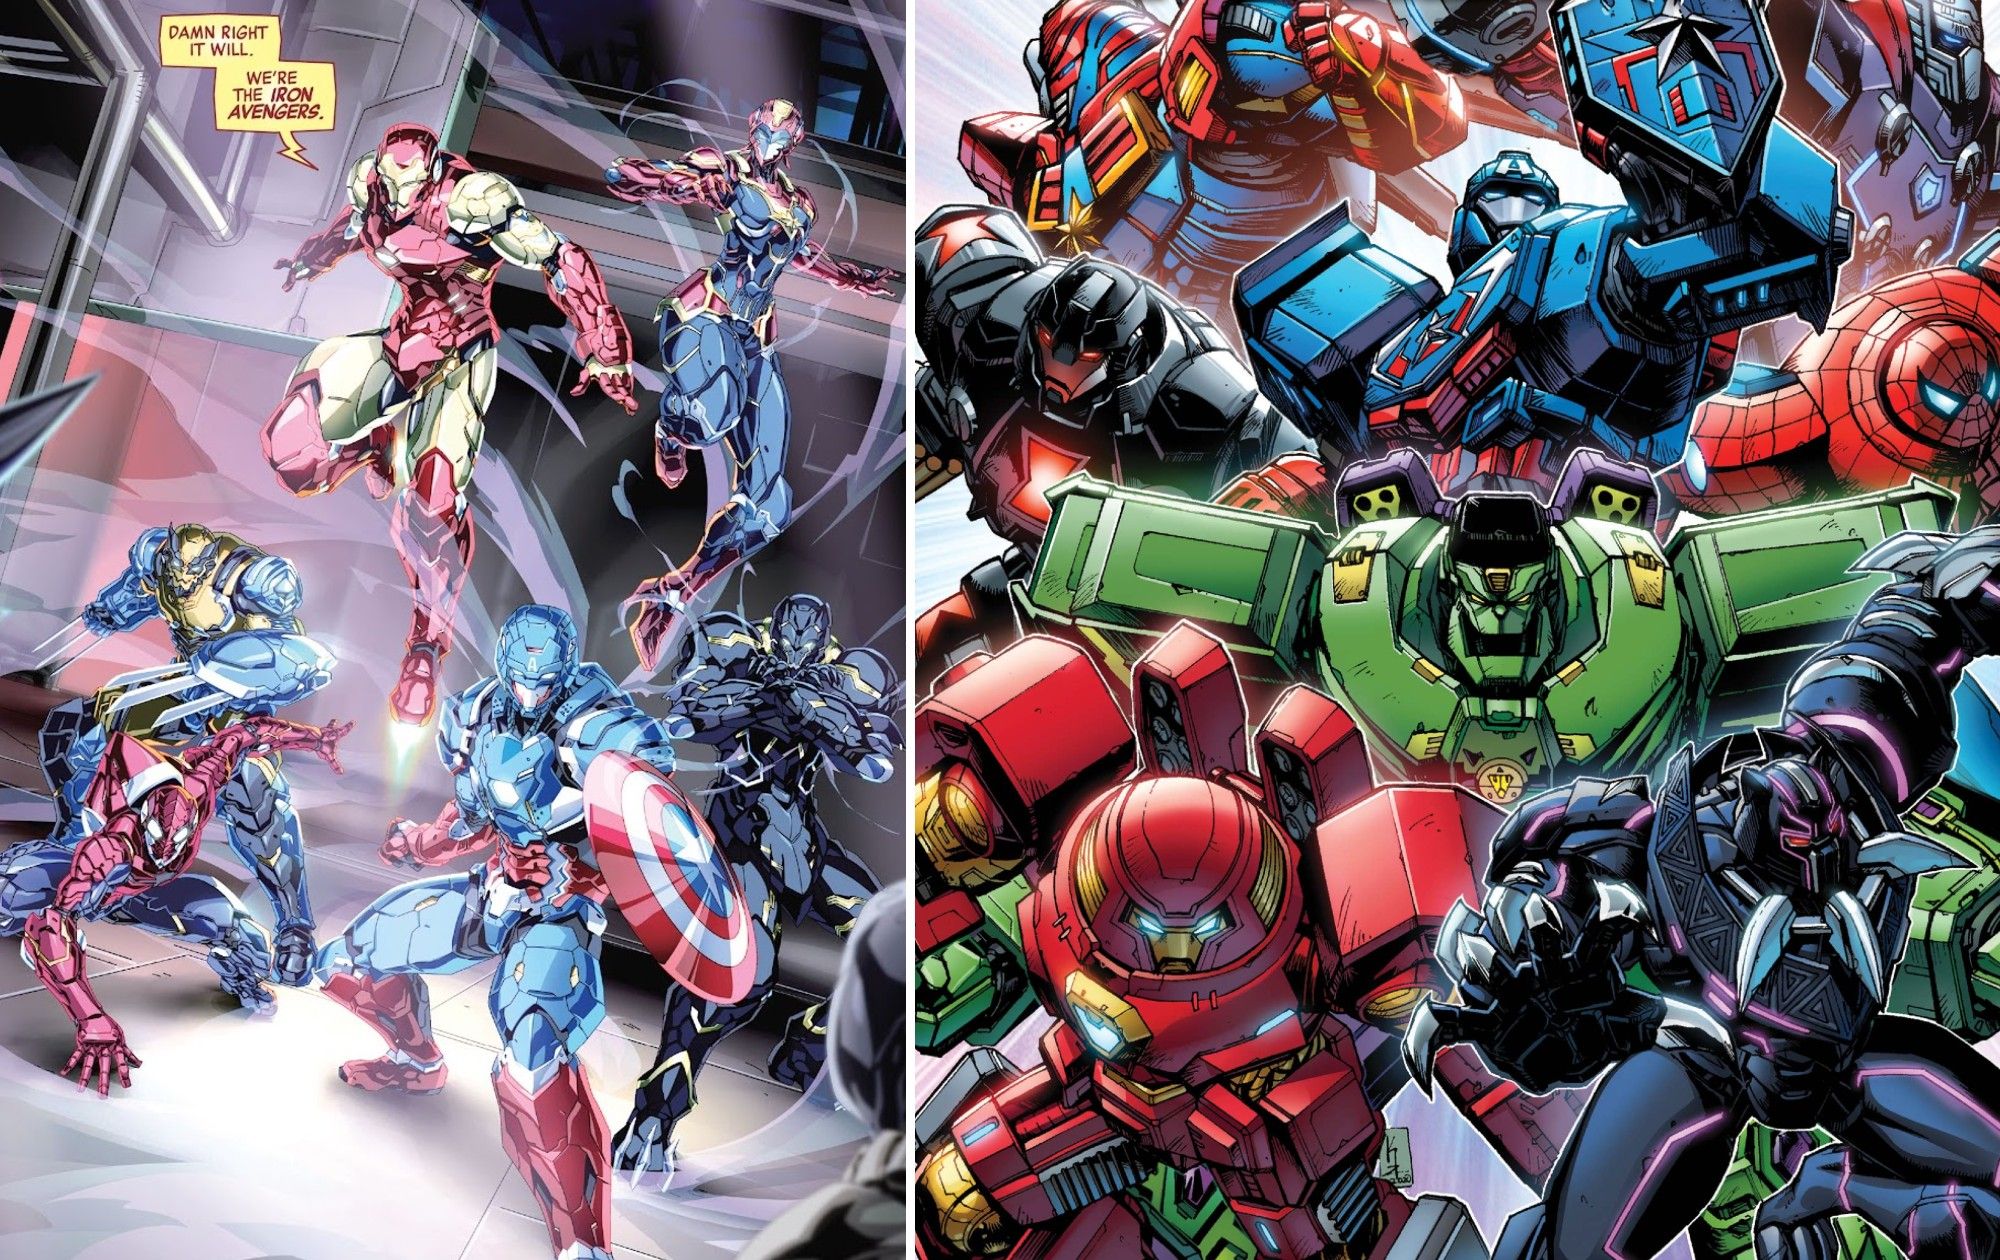 Tech-On Avengers vs Avengers Mech Strike: Which Team Has Cooler Armor?